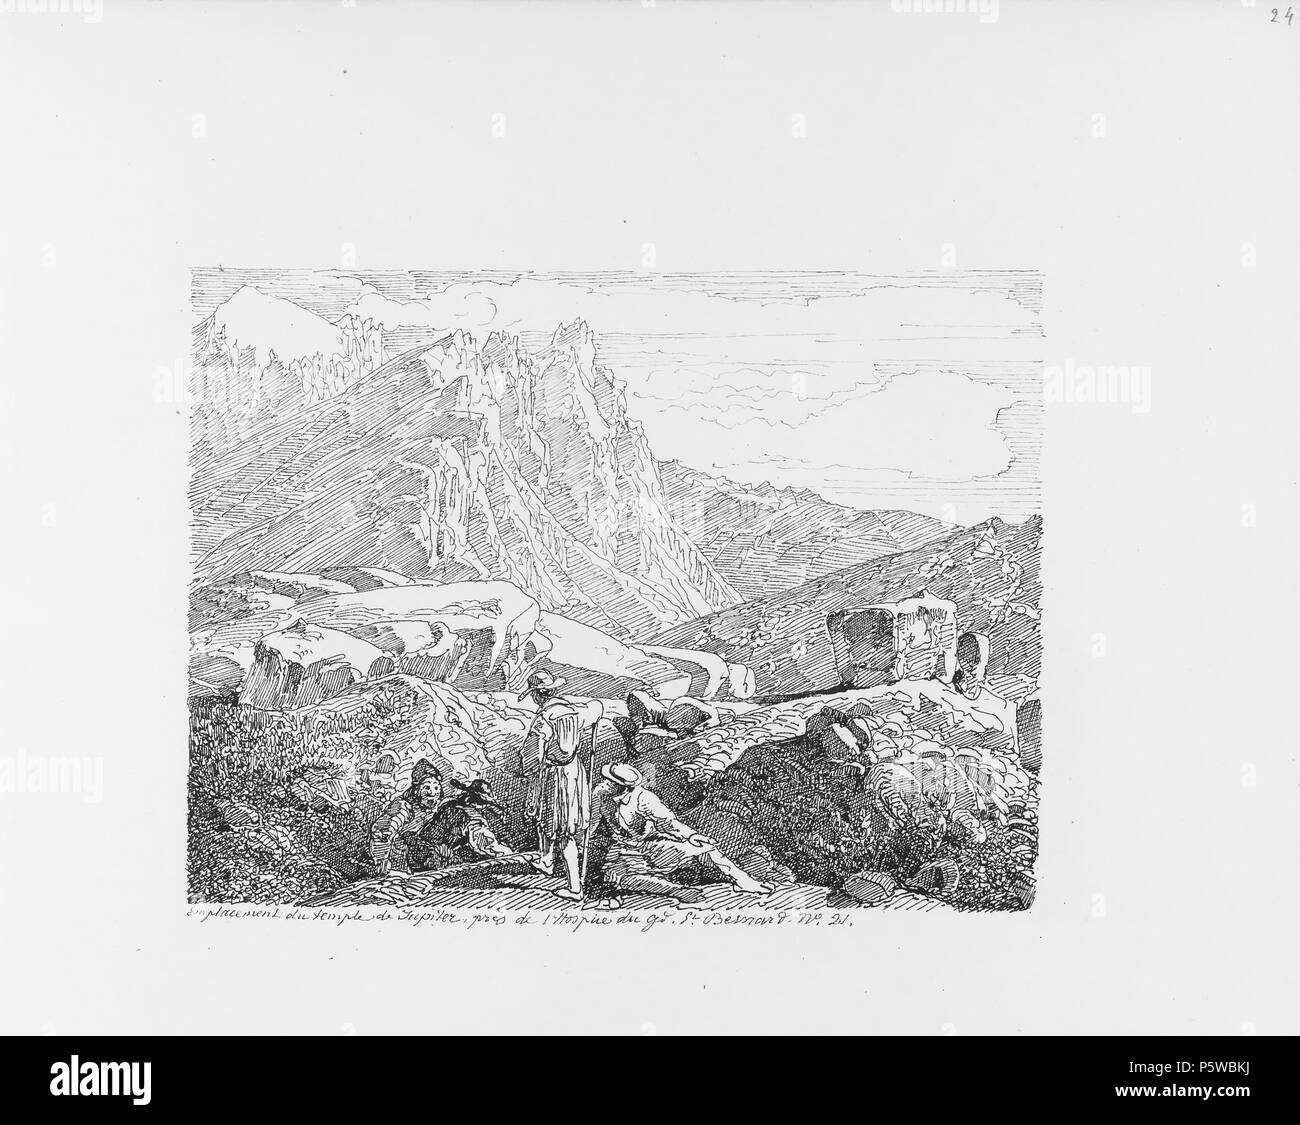 322 CH-NB-Voyage autour du Mont-Blanc dans les vallées d'Hérens de Zermatt et au Grimsel 1843-nbdig-19161-023 Stock Photo